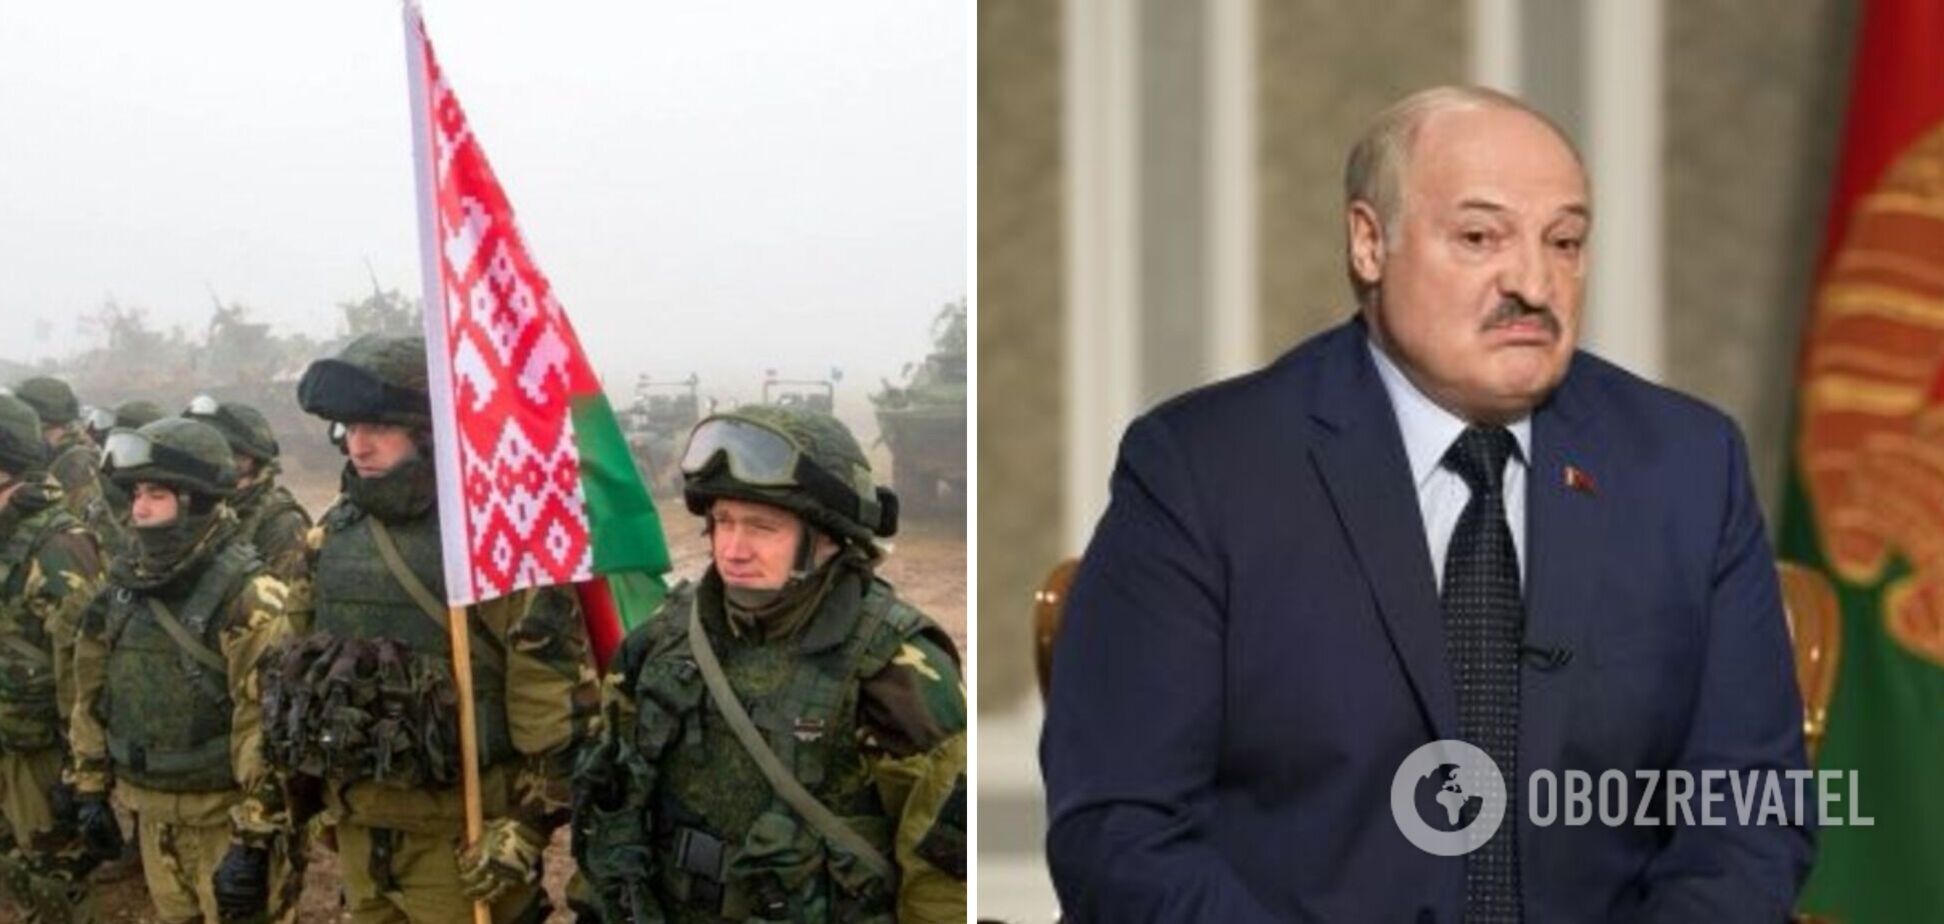 Лукашенко оказался под сильным давлением: политолог объяснил, что стоит за 'метаниями' руководства Беларуси